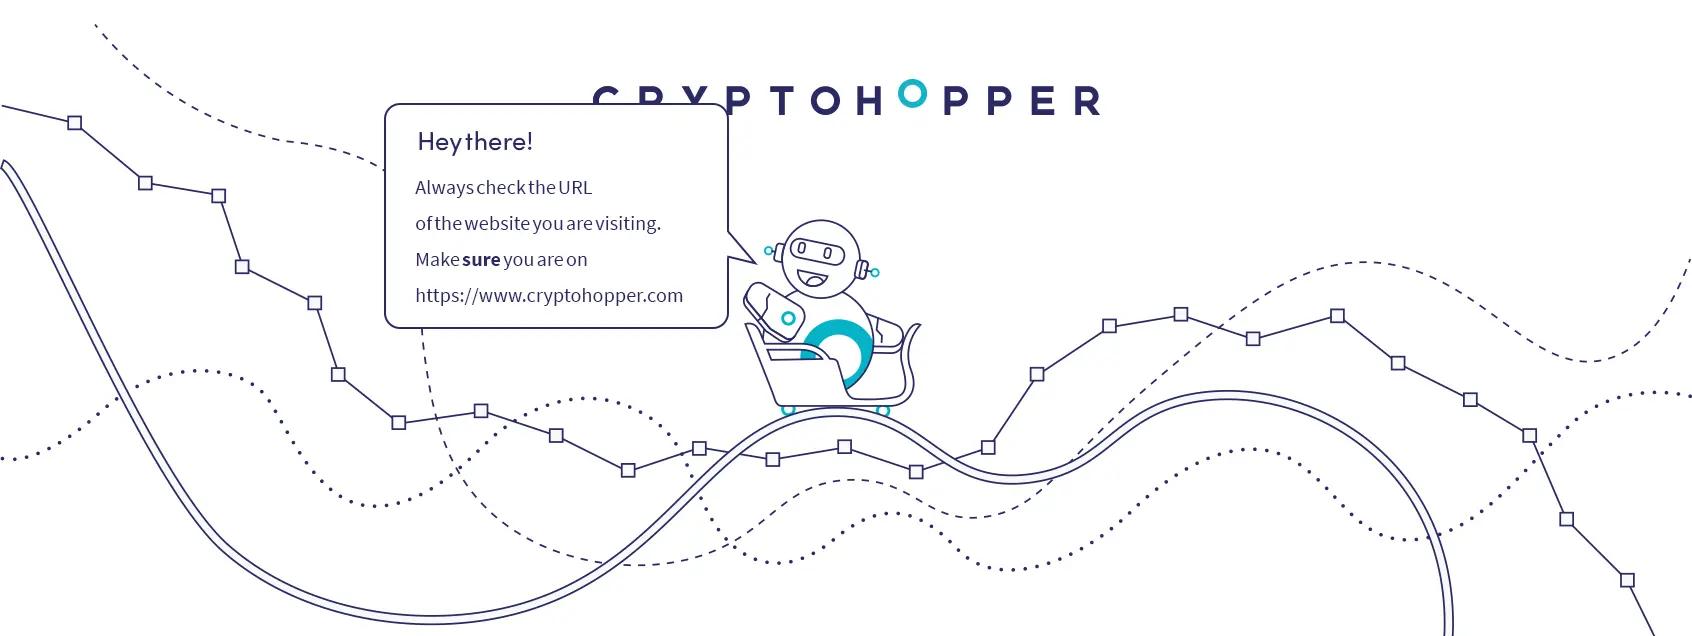 Cryptohopper warns for phishing